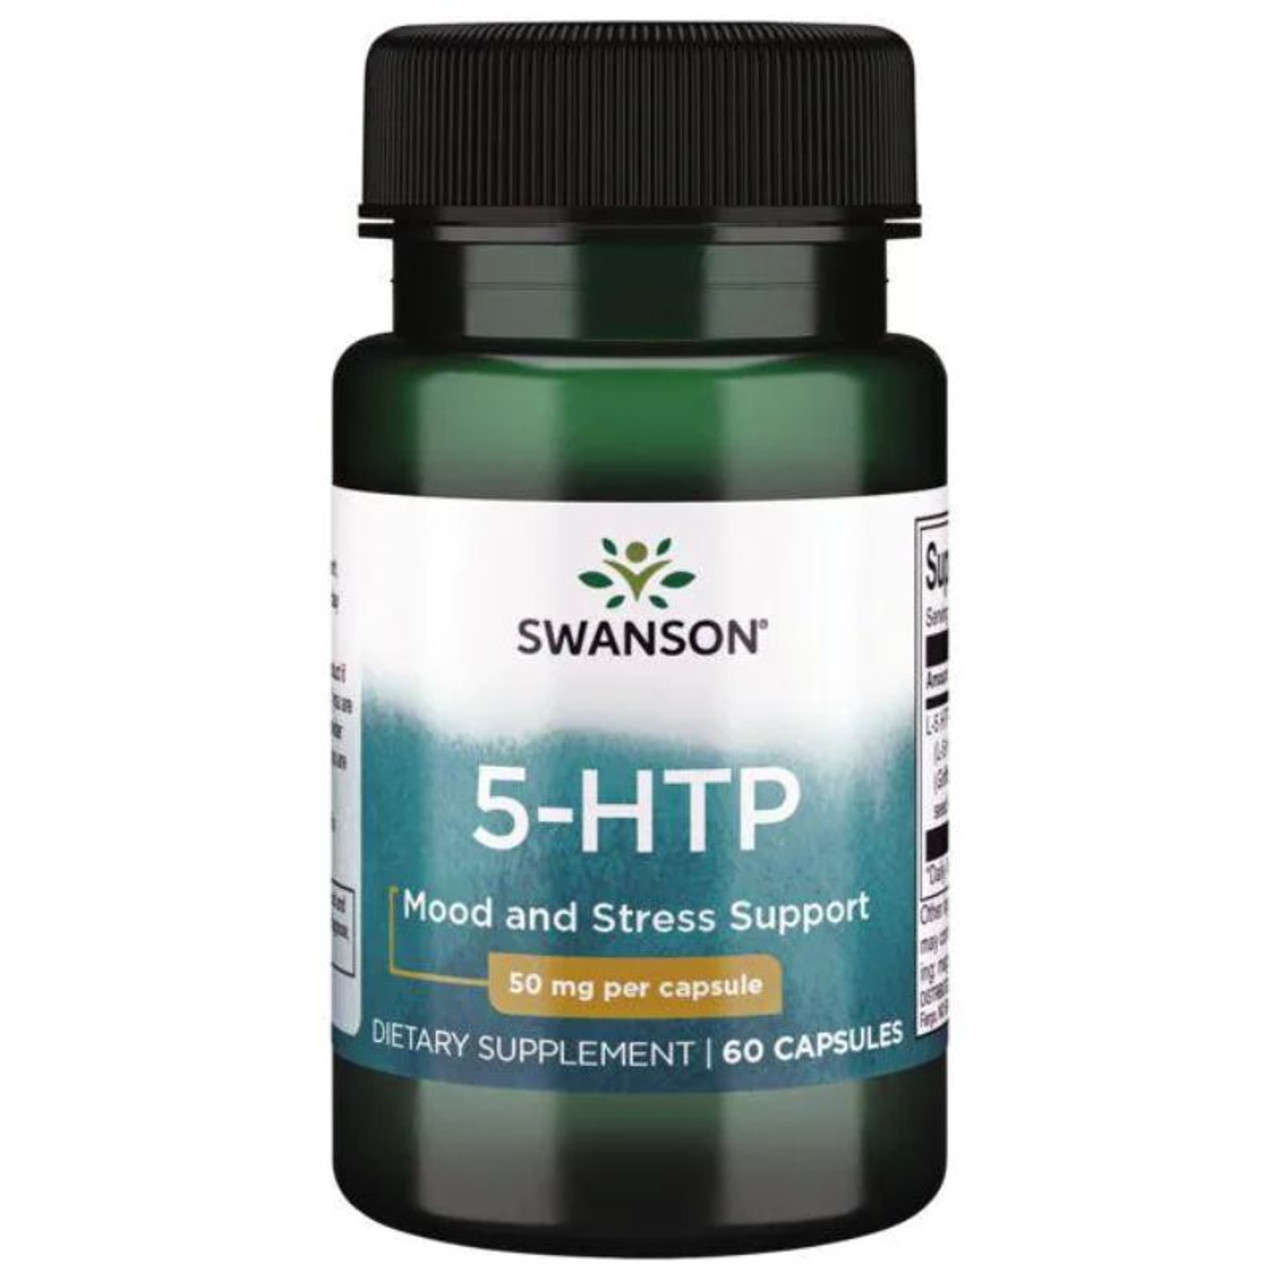 Swanson 5-HTP 60 Caps